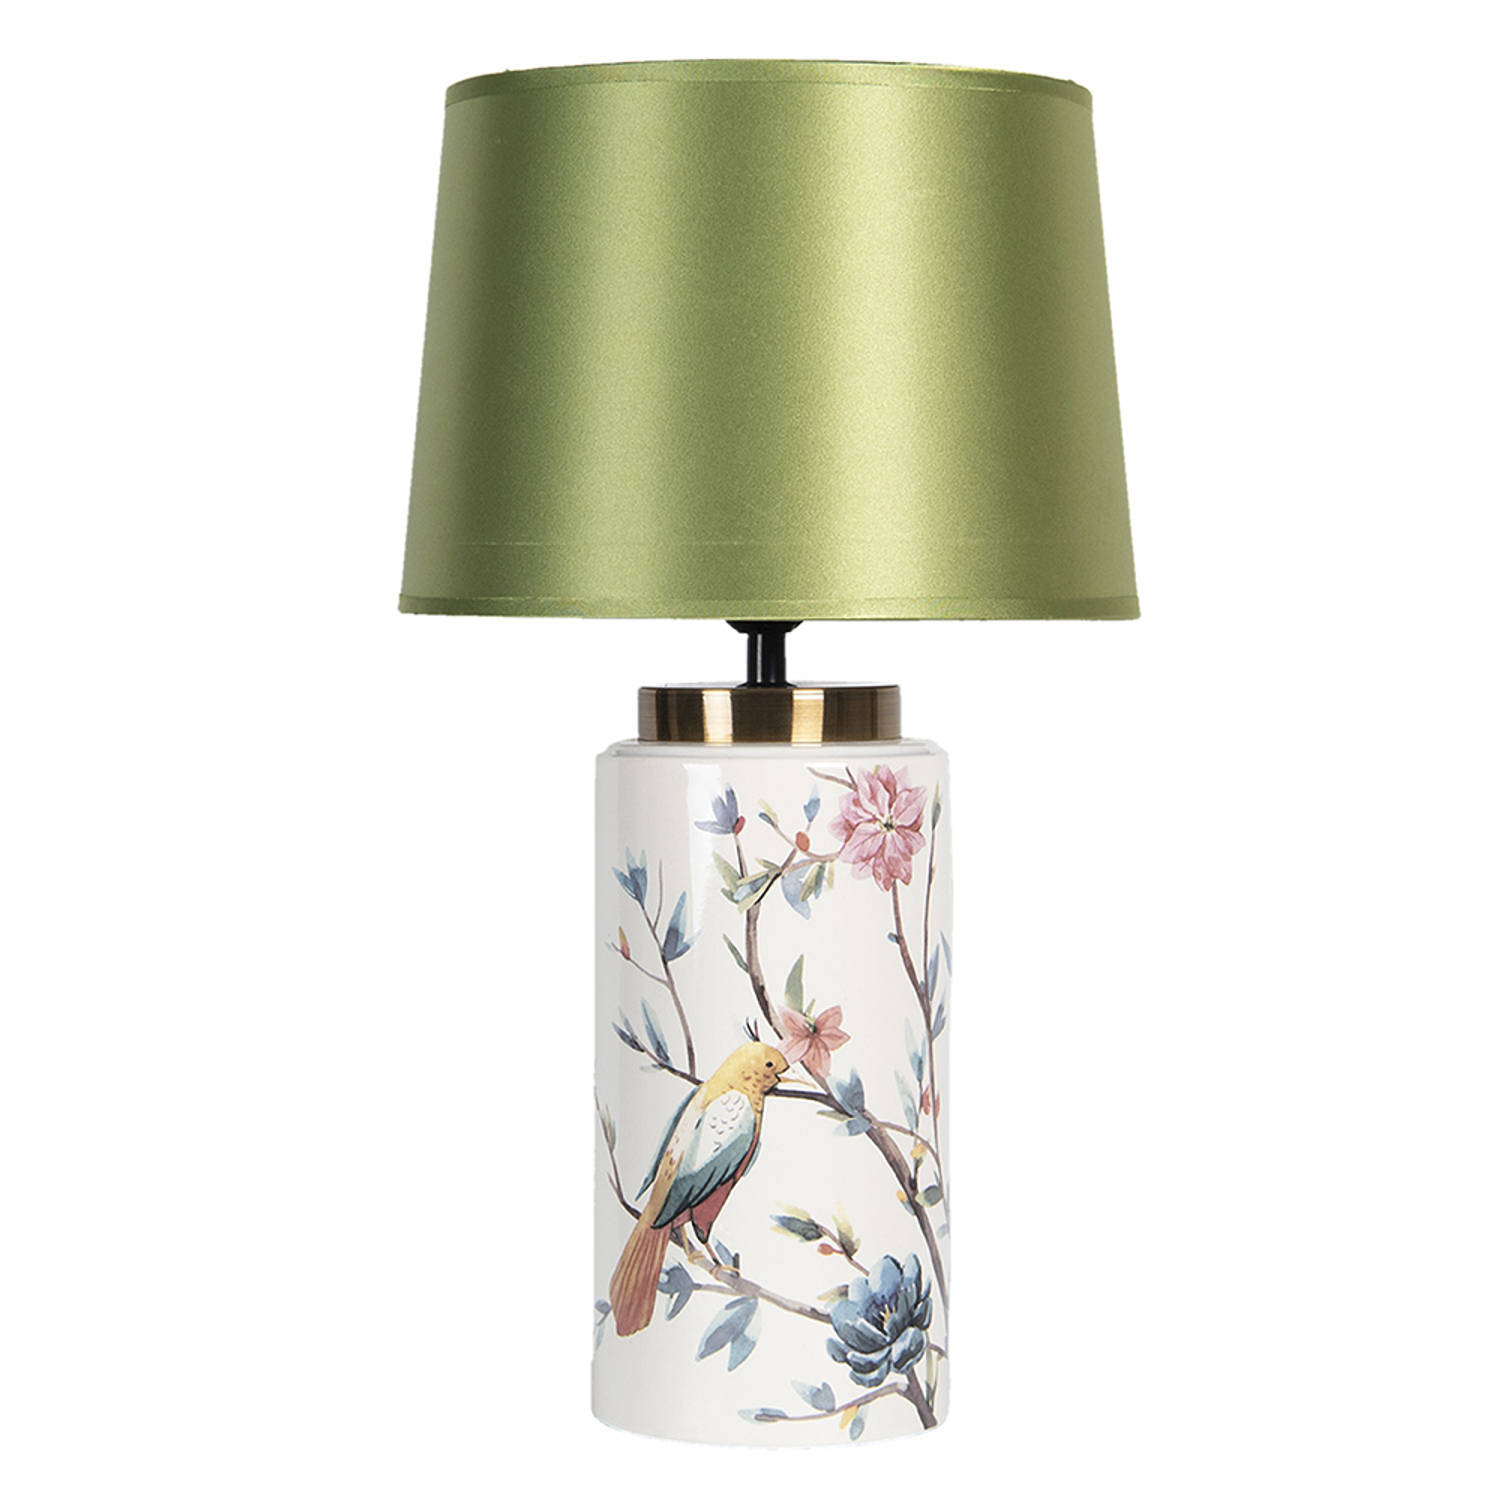 HAES DECO - Tafellamp - Modern Chic - Bloemen en Vogels, Formaat Ø 27x35 cm - Wit / Groen Keramiek - Bureaulamp, Sfeerlamp, Nachtlampje